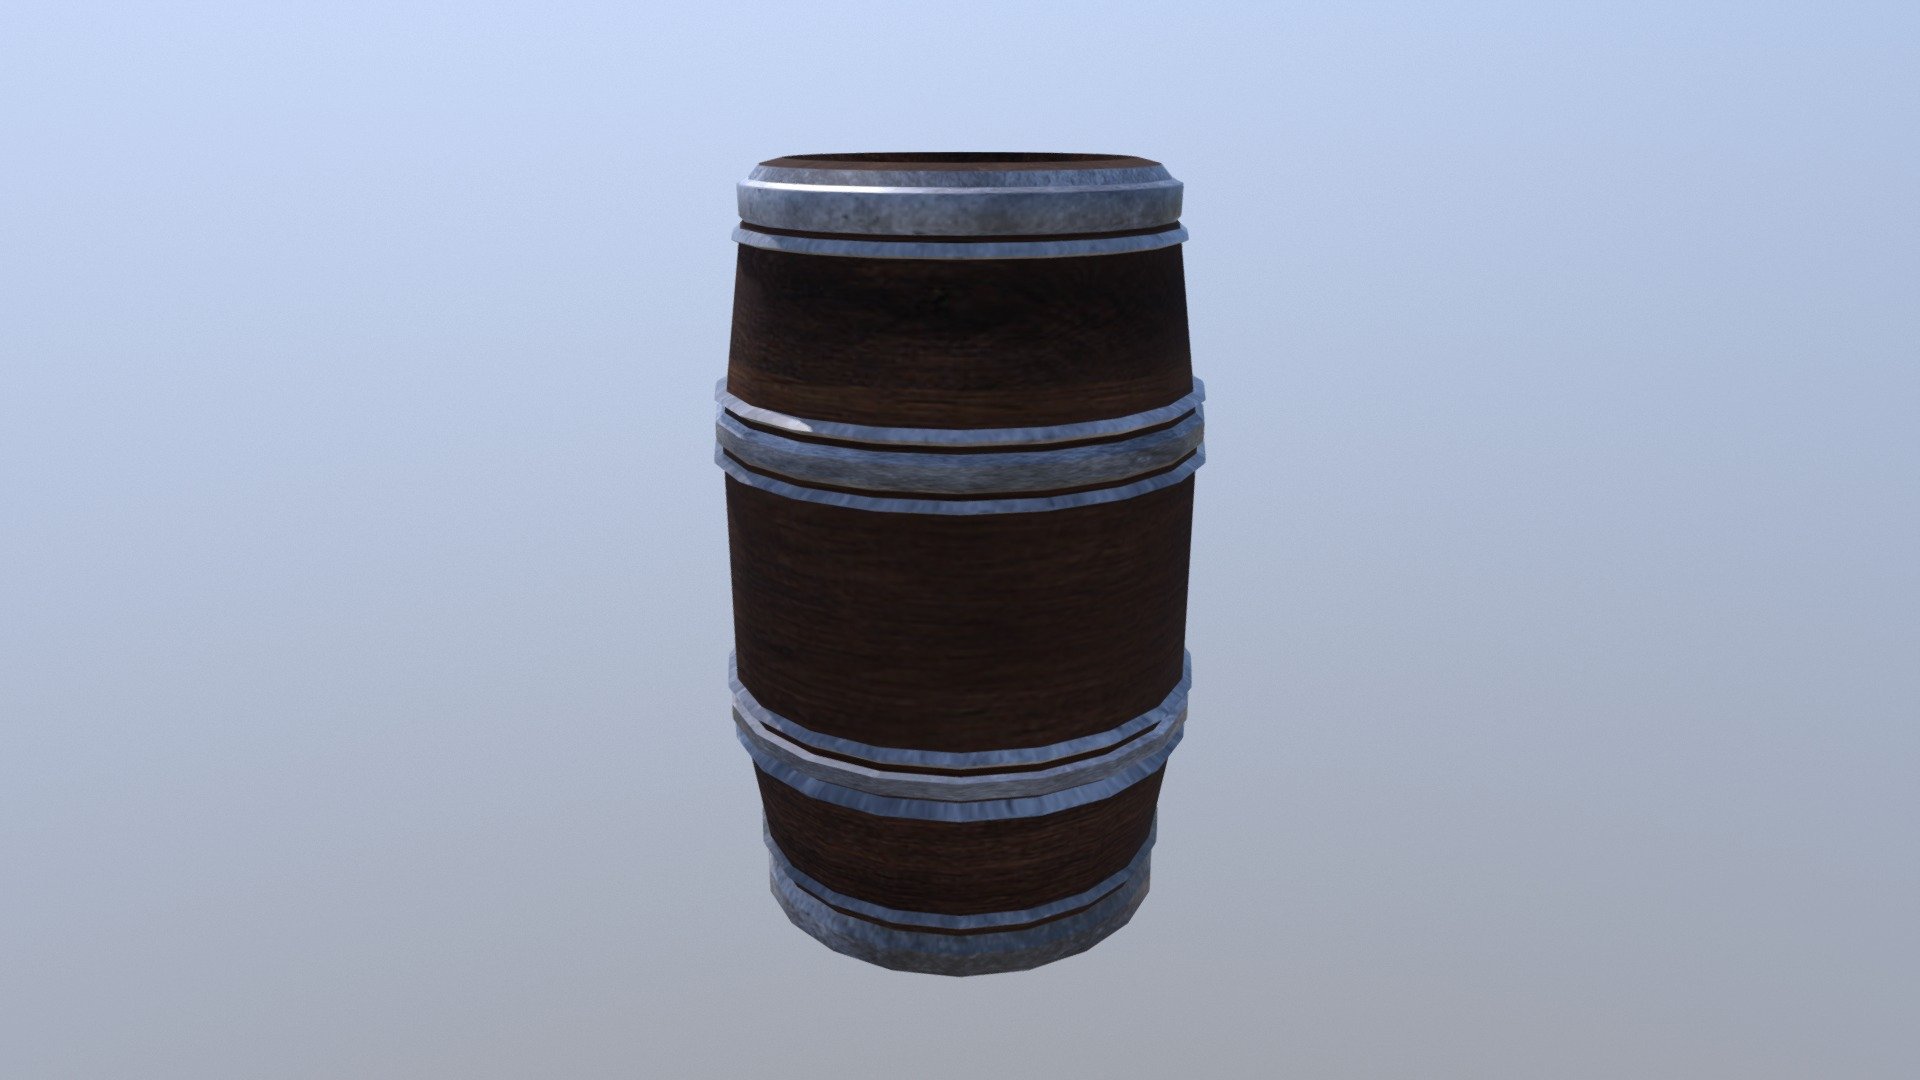 Old Barrel